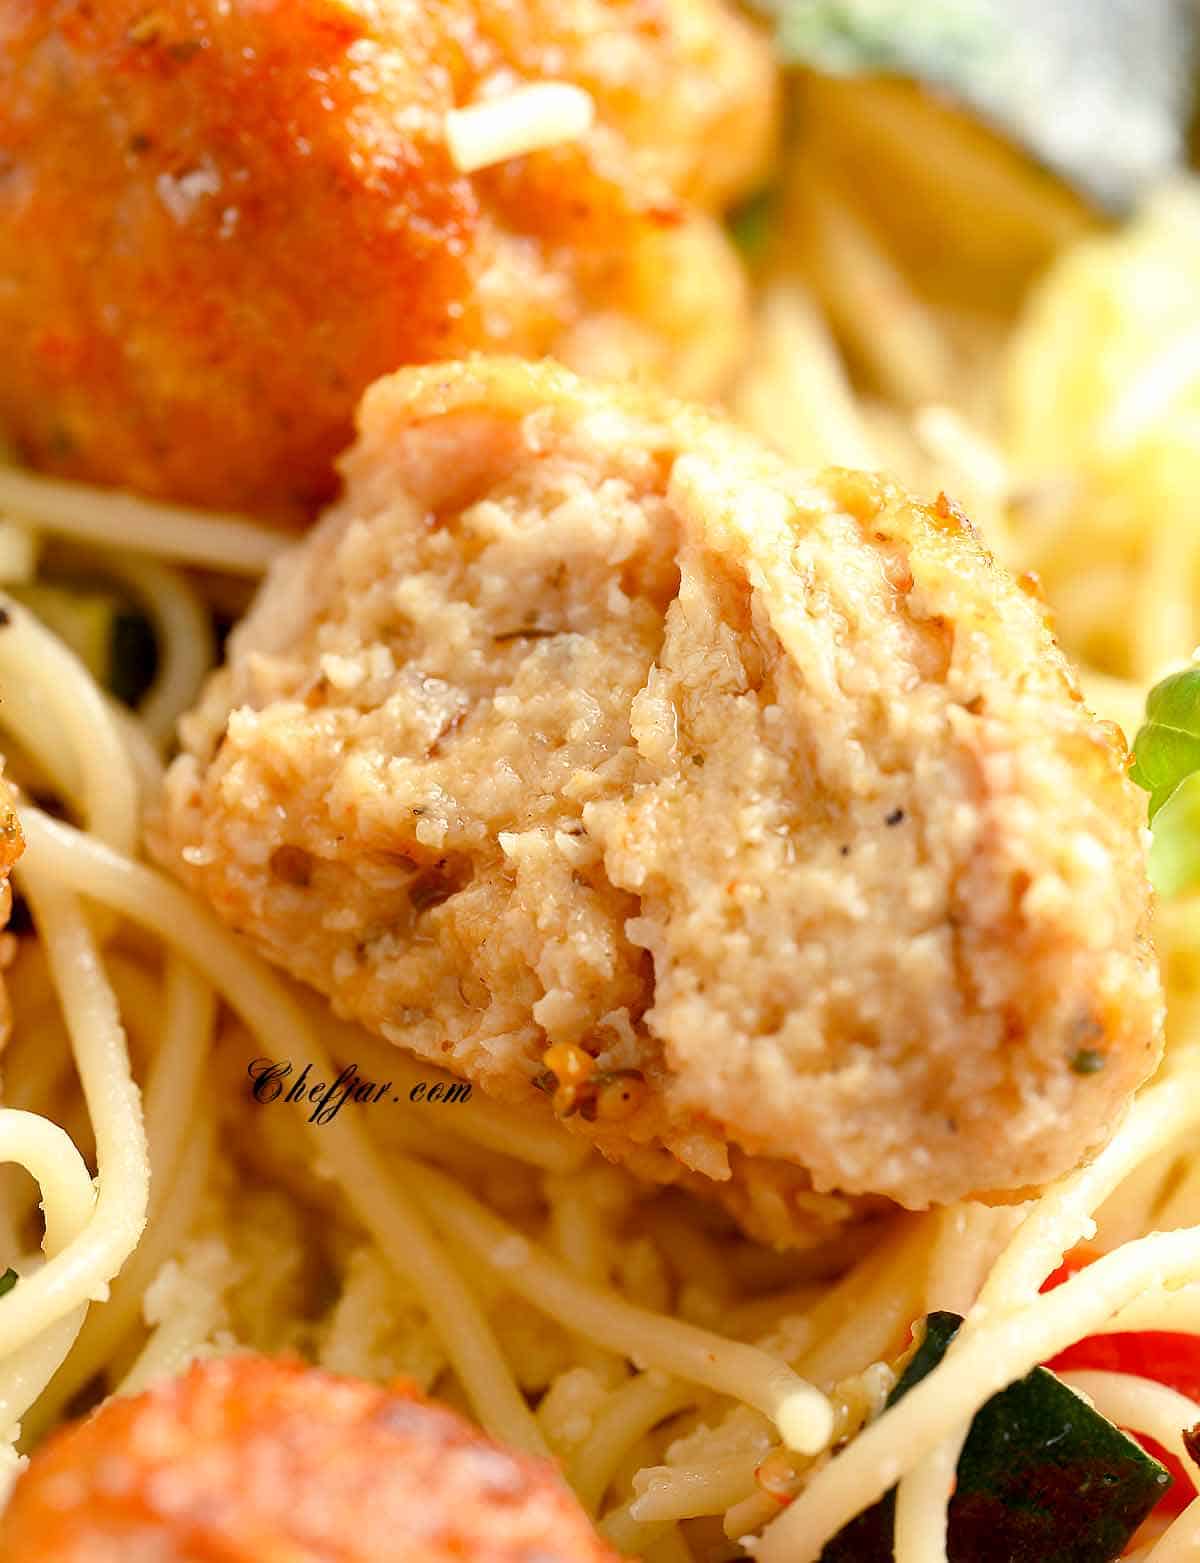 Italian style chicken meatballs